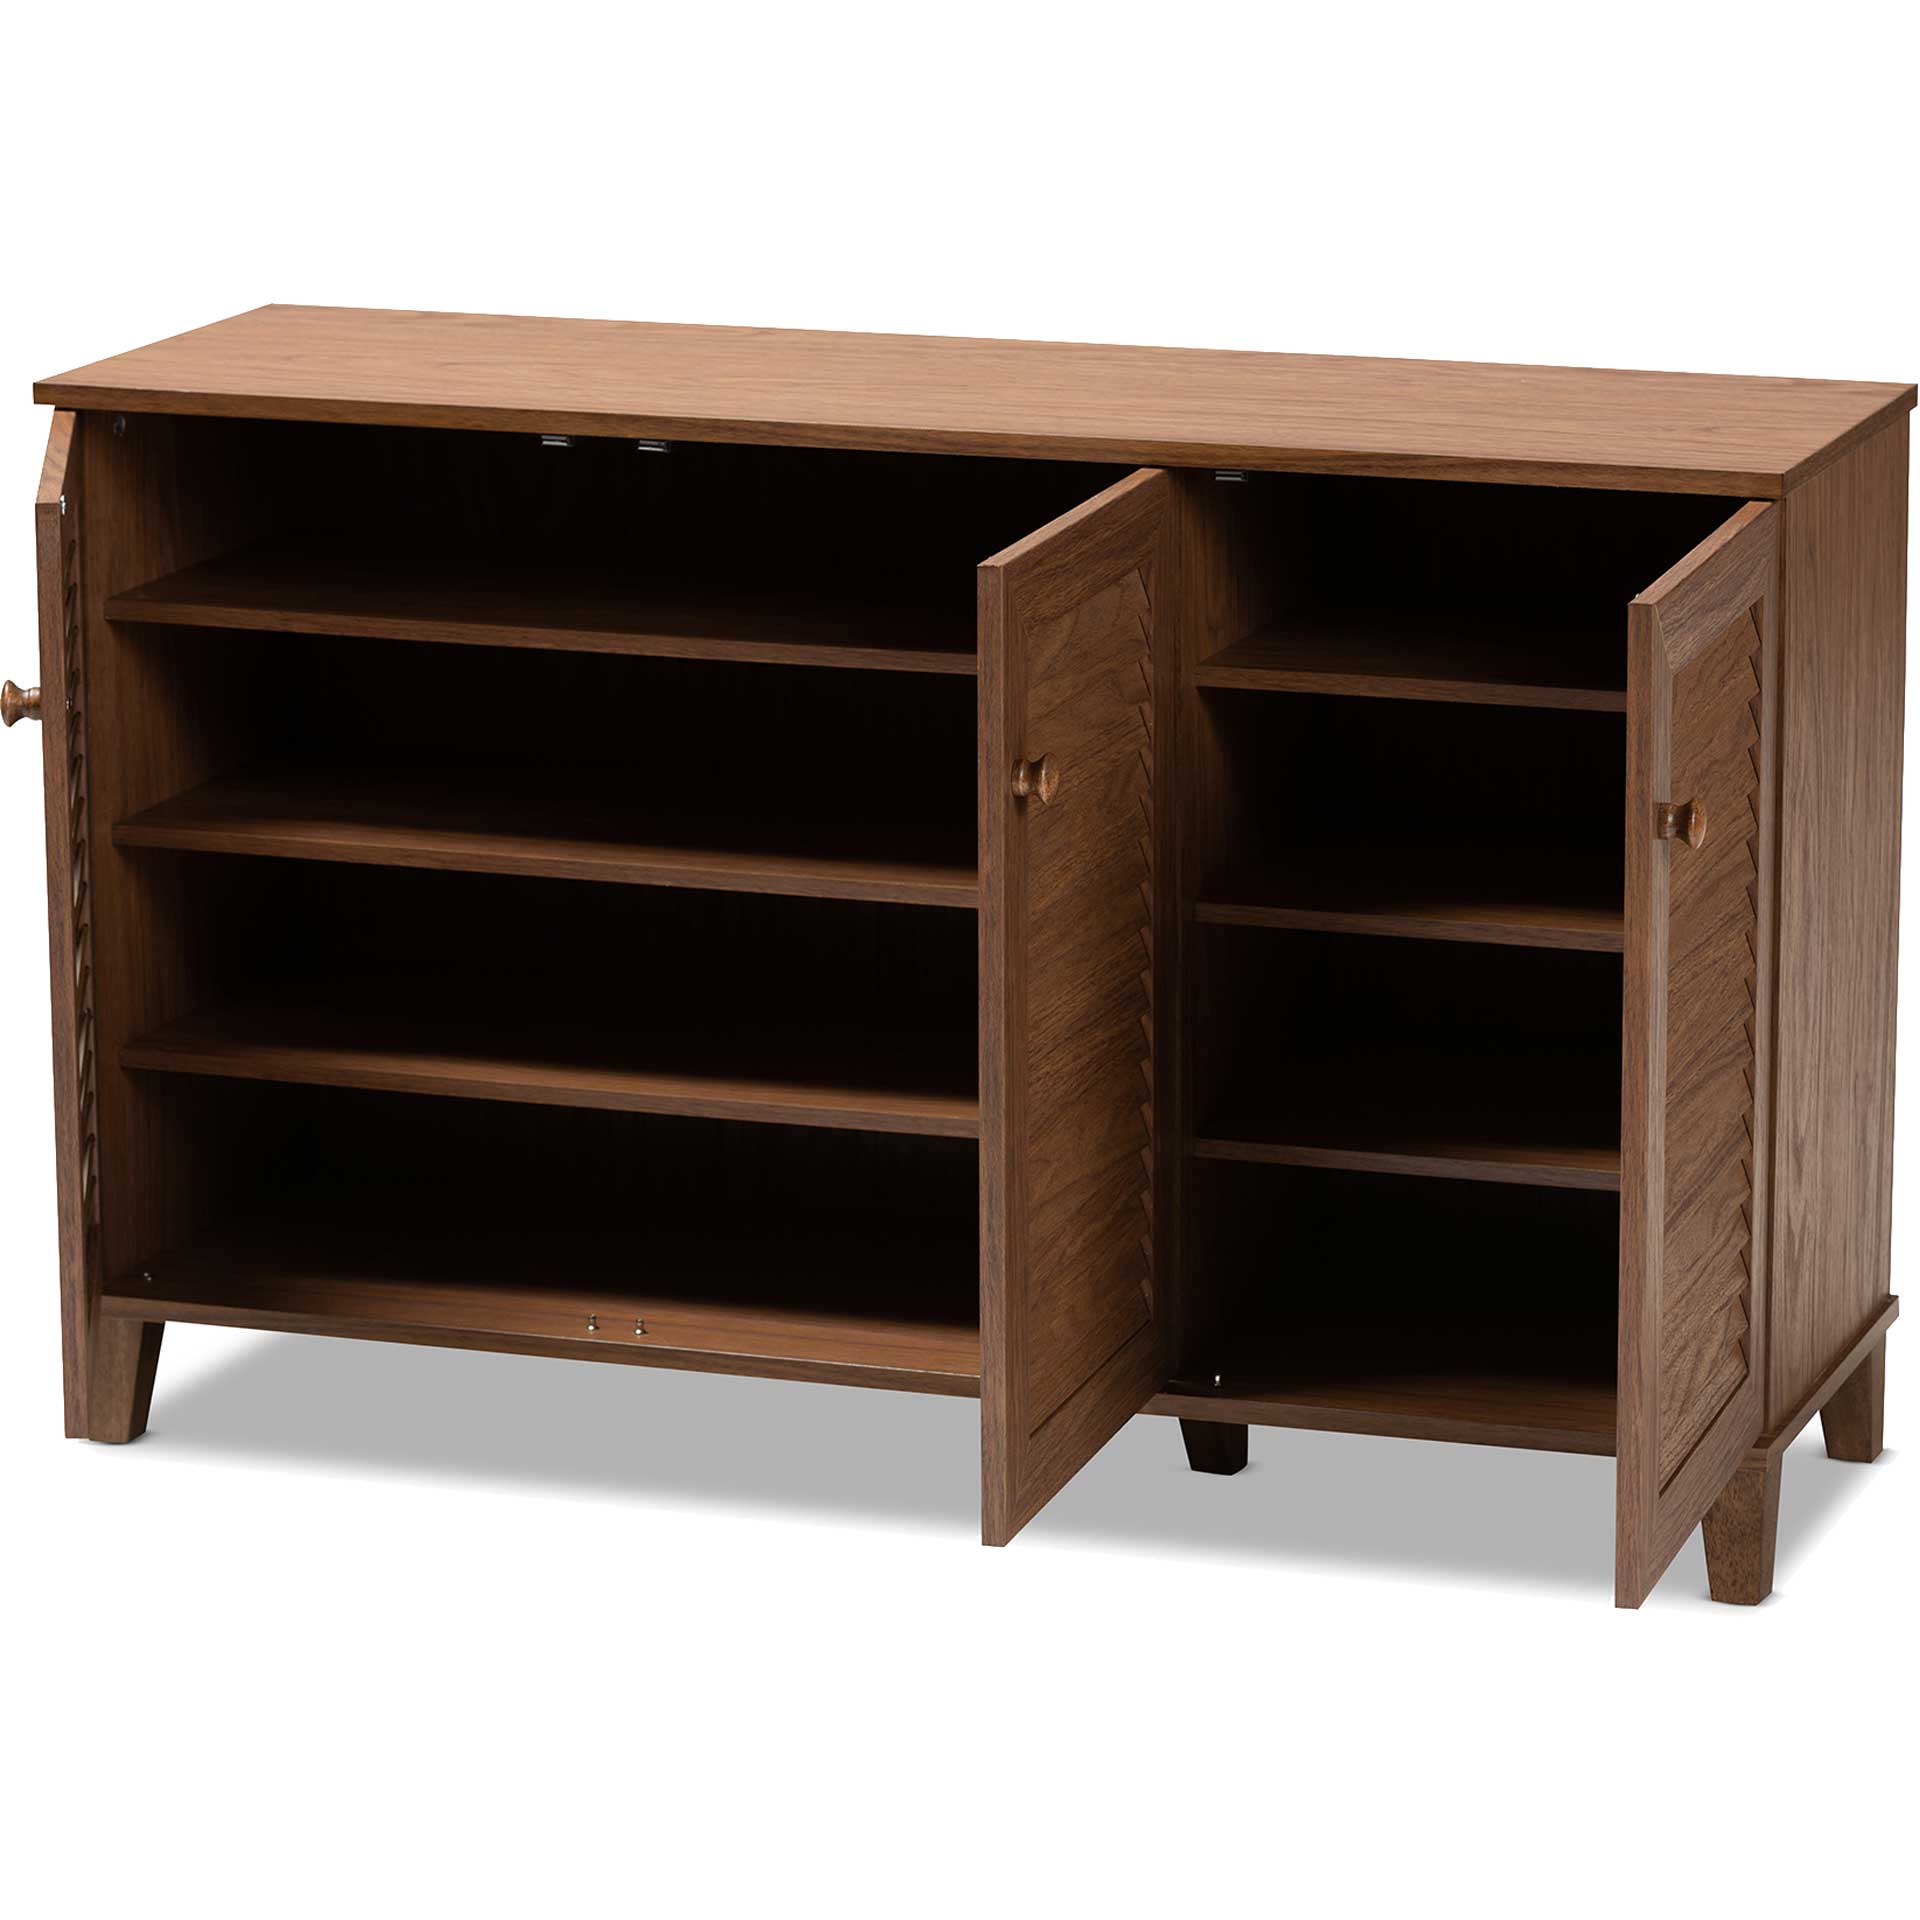 Seattle 8-Shelf Wood Shoe Cabinet Walnut